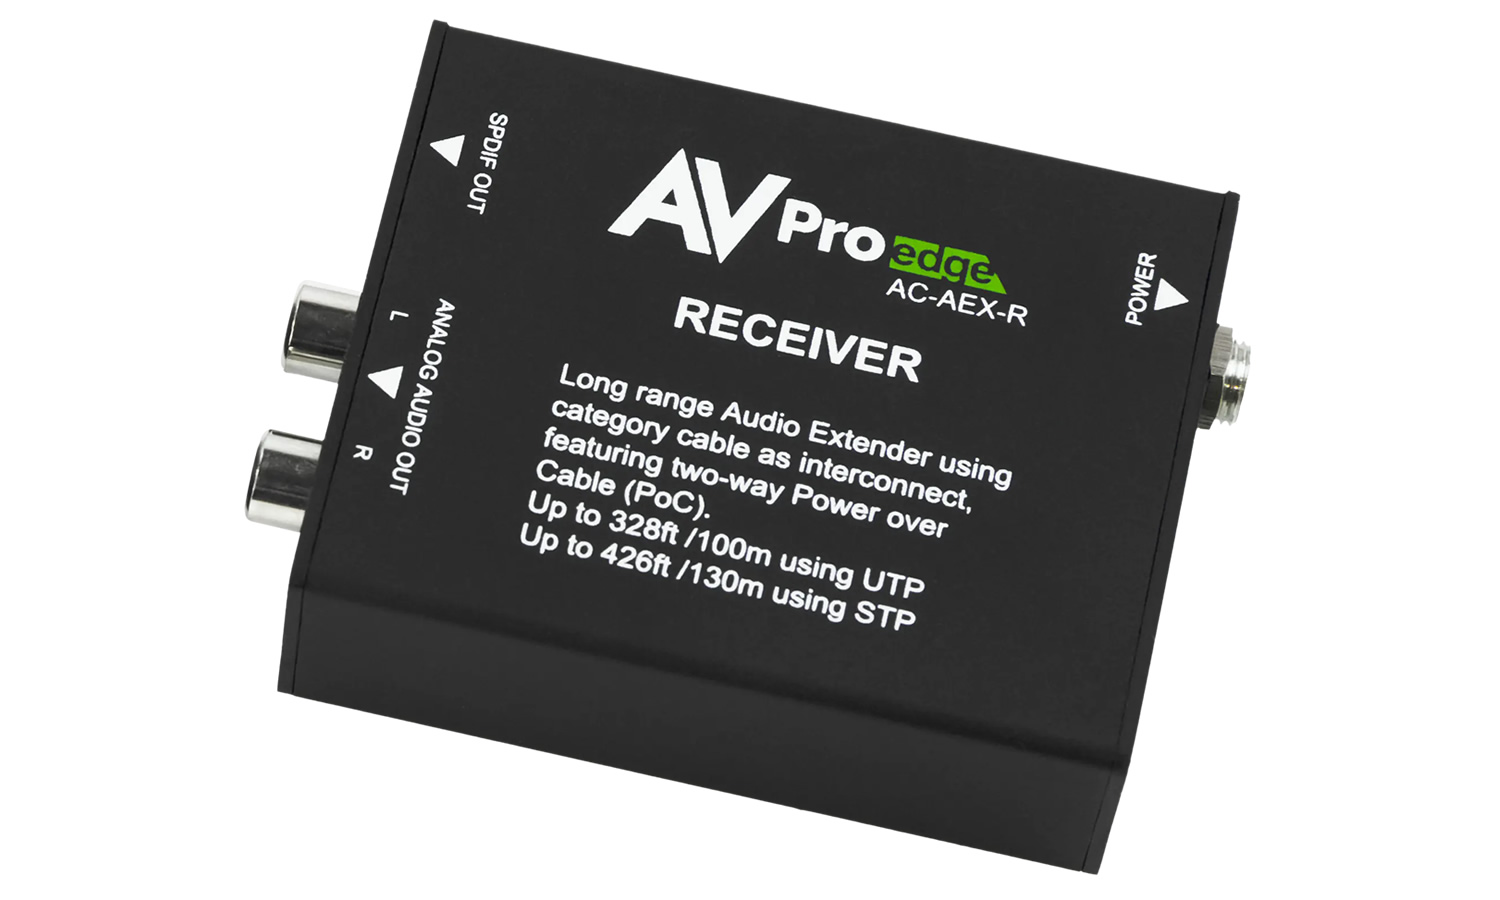 AVPro Edge AC-AEX-R 100M Uncompressed Audio Receiver